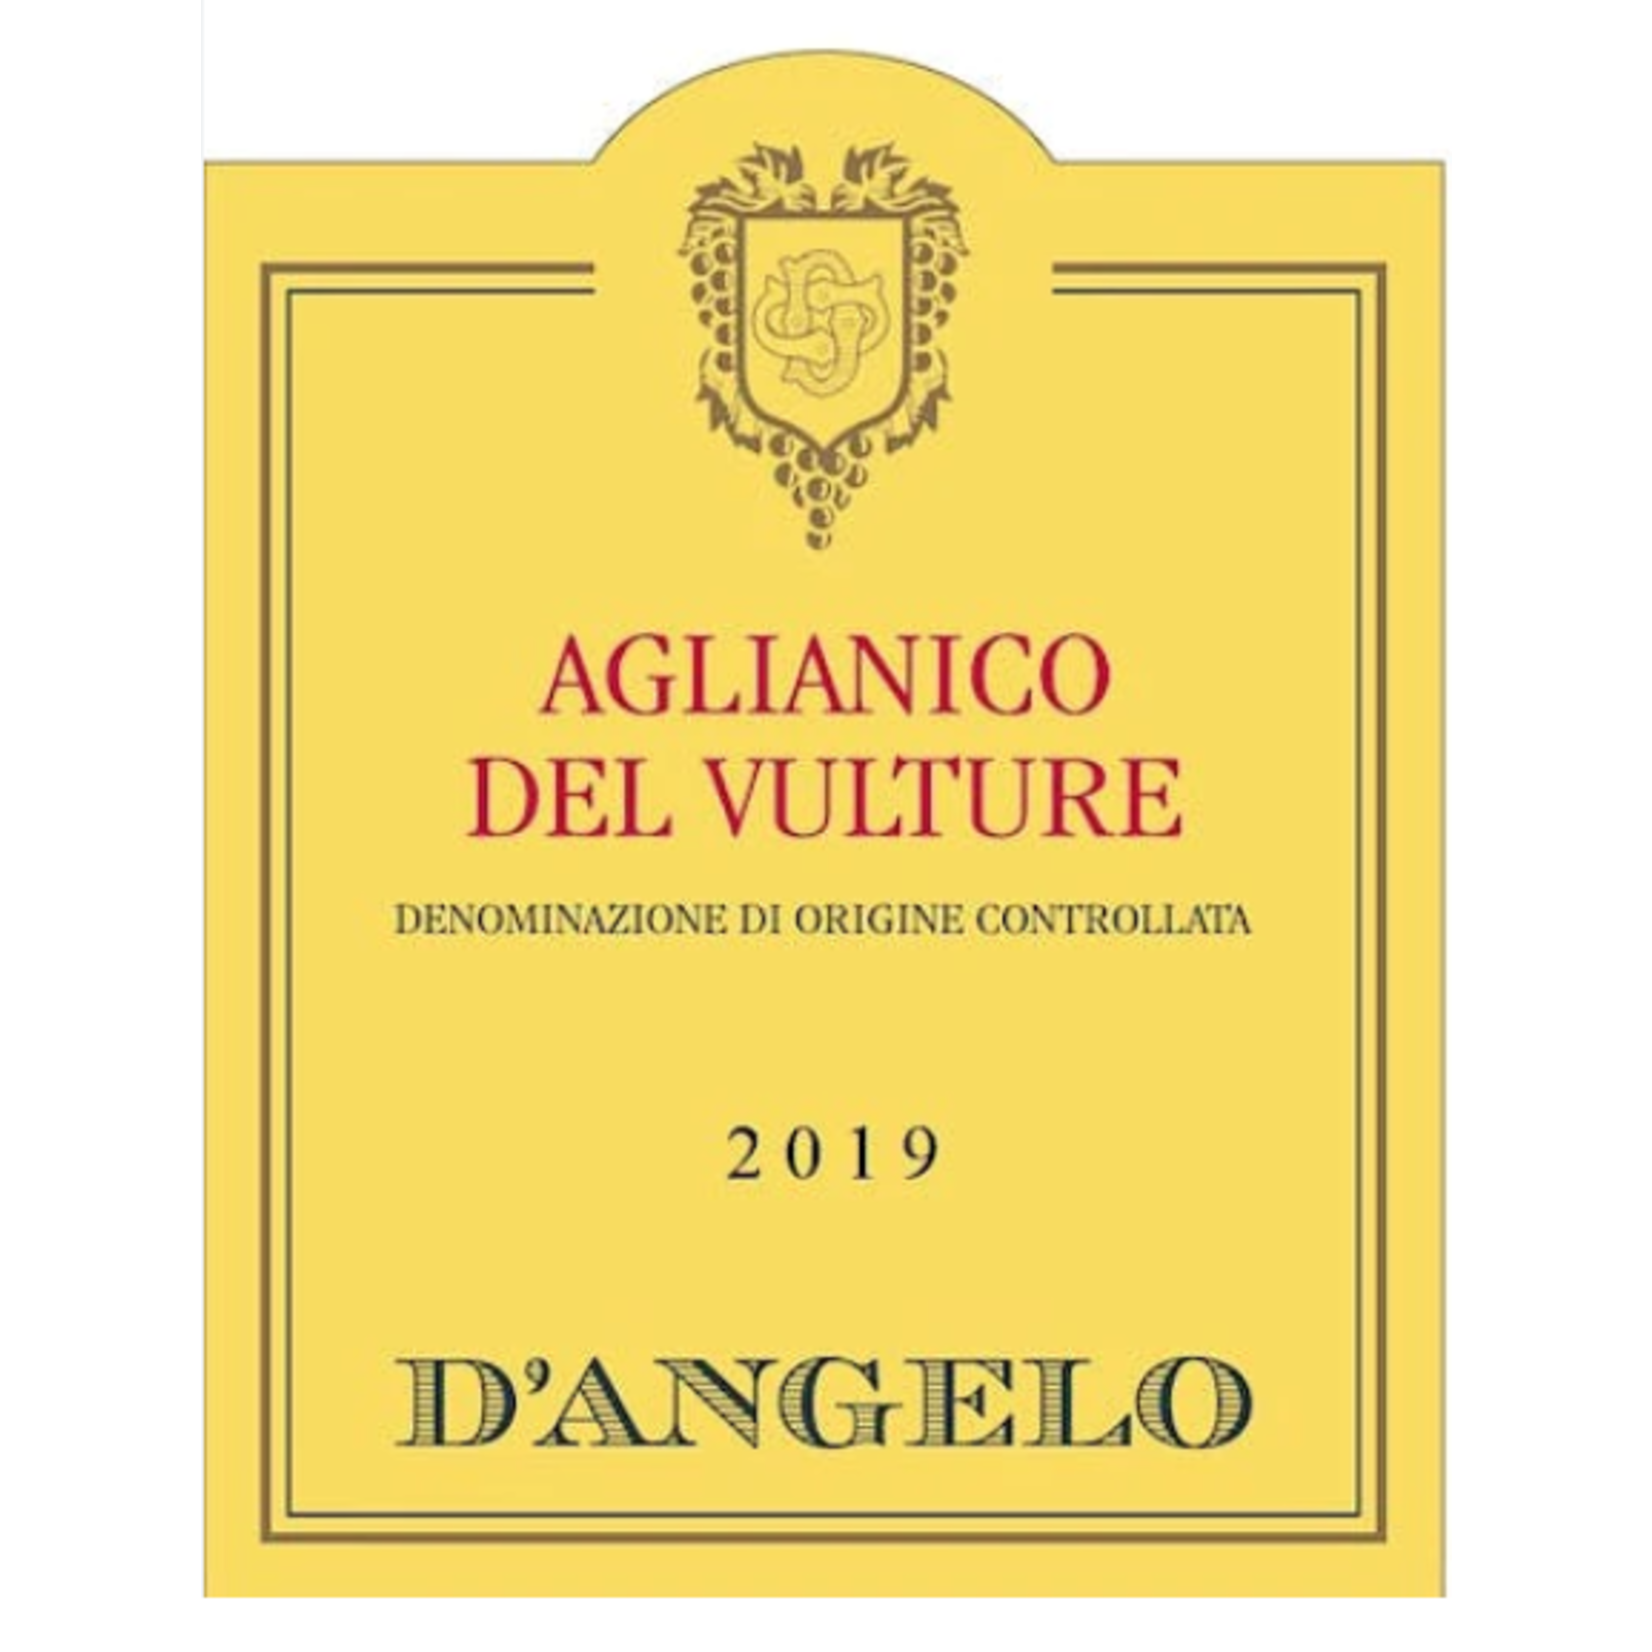 D'Angelo Rionero D'Angelo Aglianico Del Vulture 2019  Italy